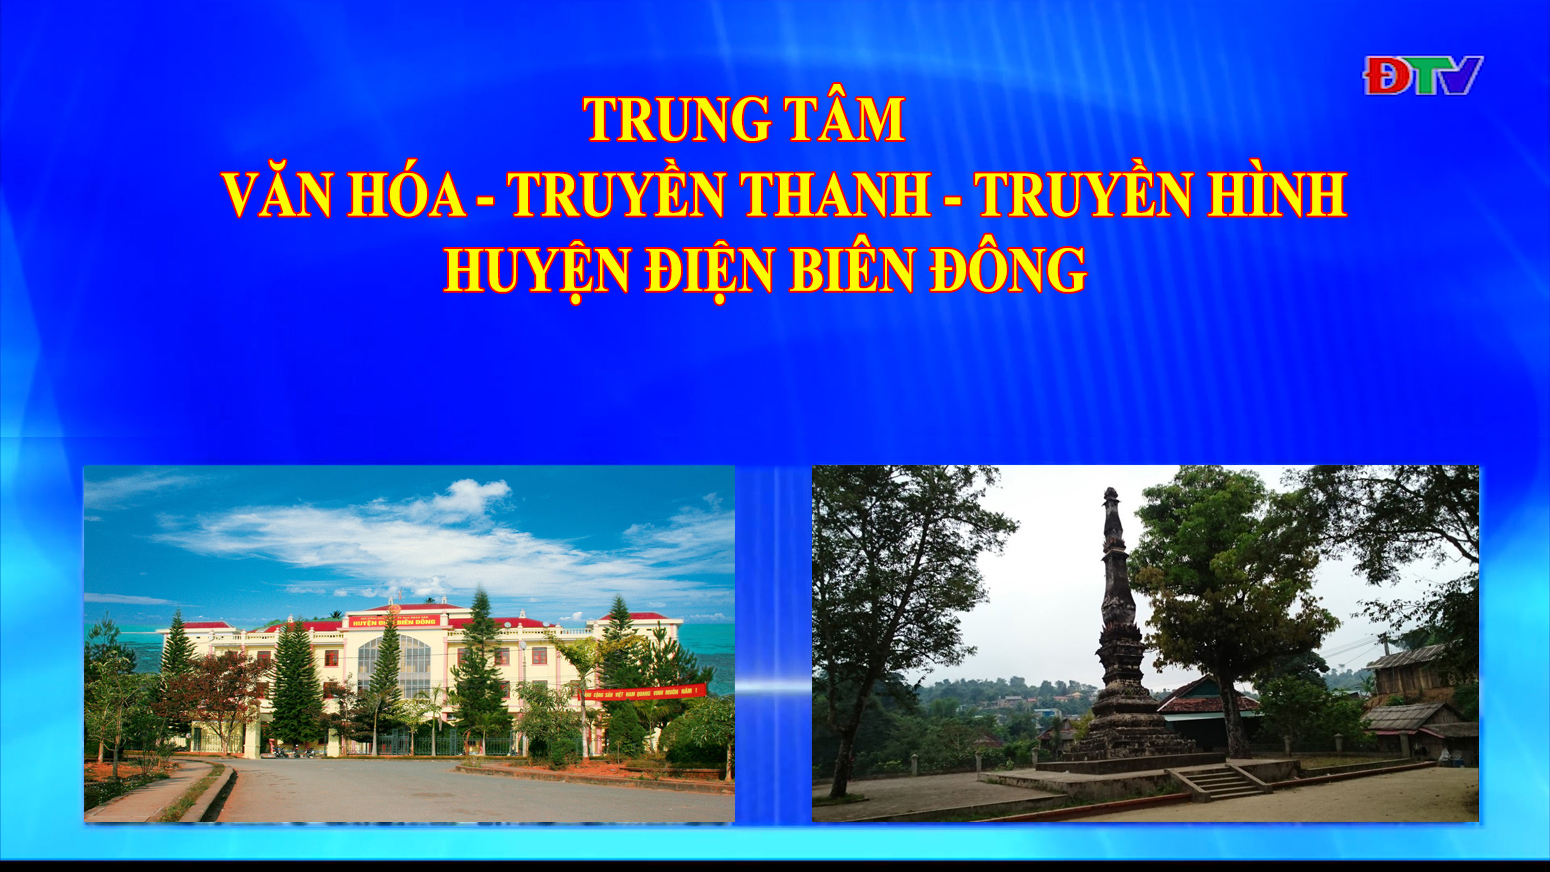 Trung tâm VH-TTTH huyện Điện Biên Đông (Ngày 9-10-2021)